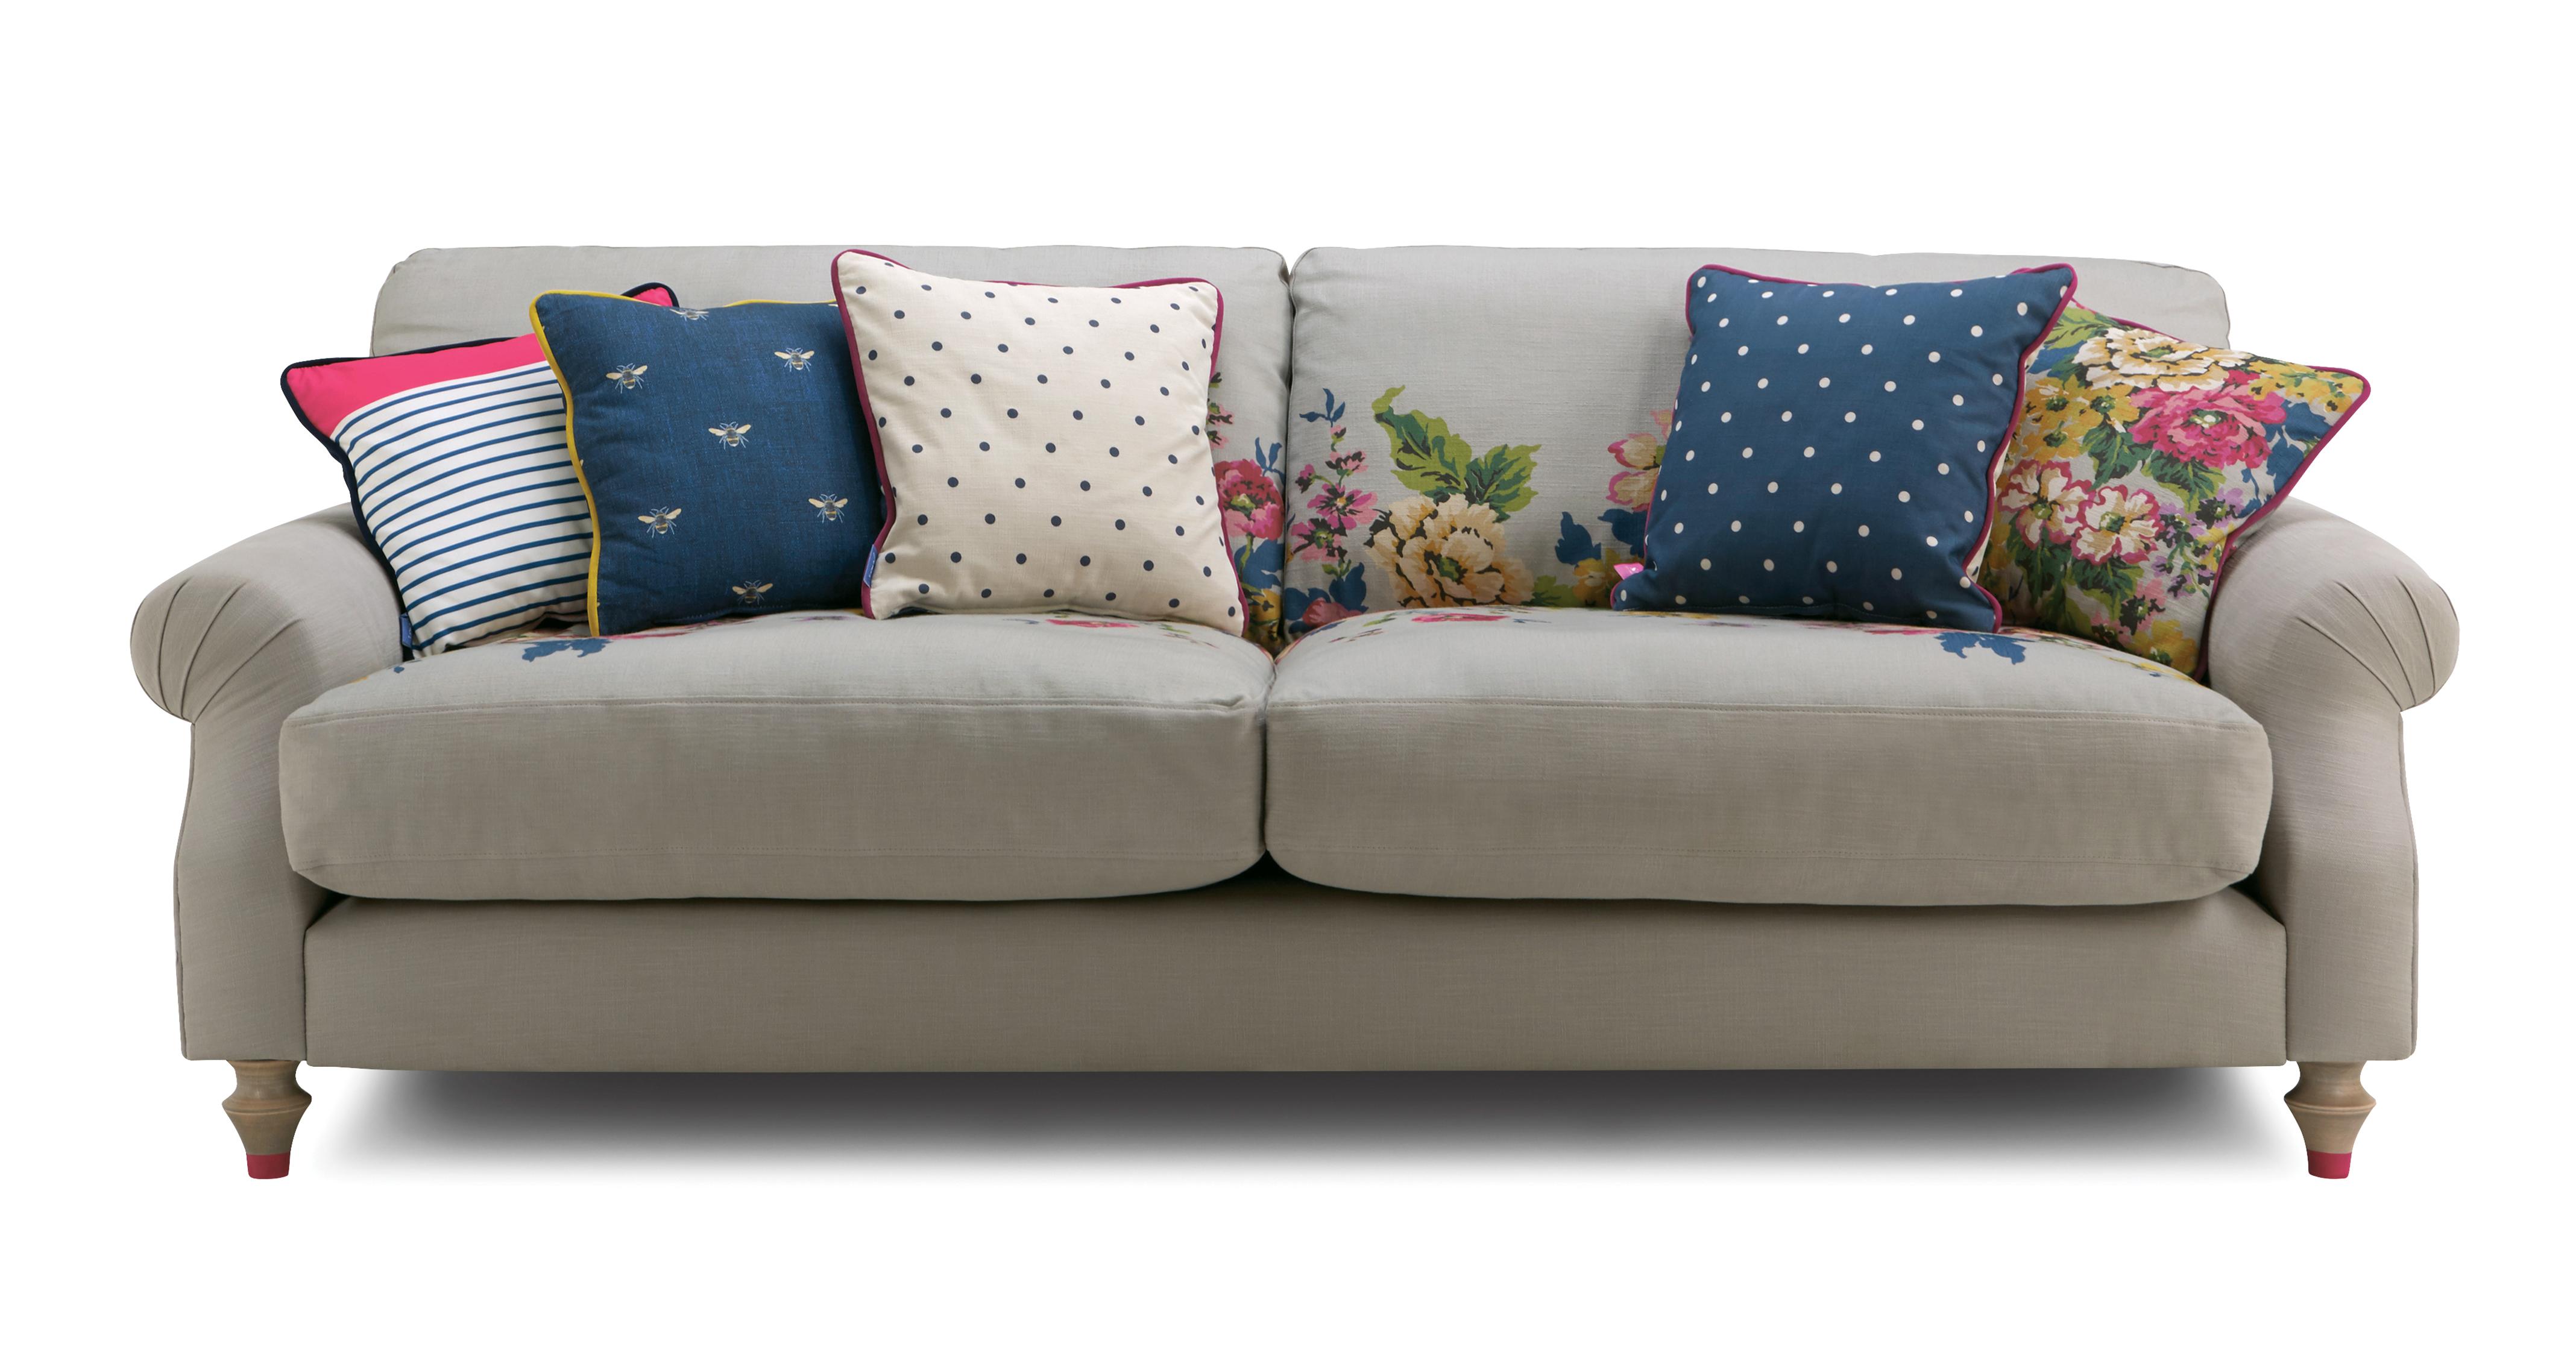 Cambridge Cotton 4 Seater Sofa Cambridge Plain And Floral Cotton Dfs